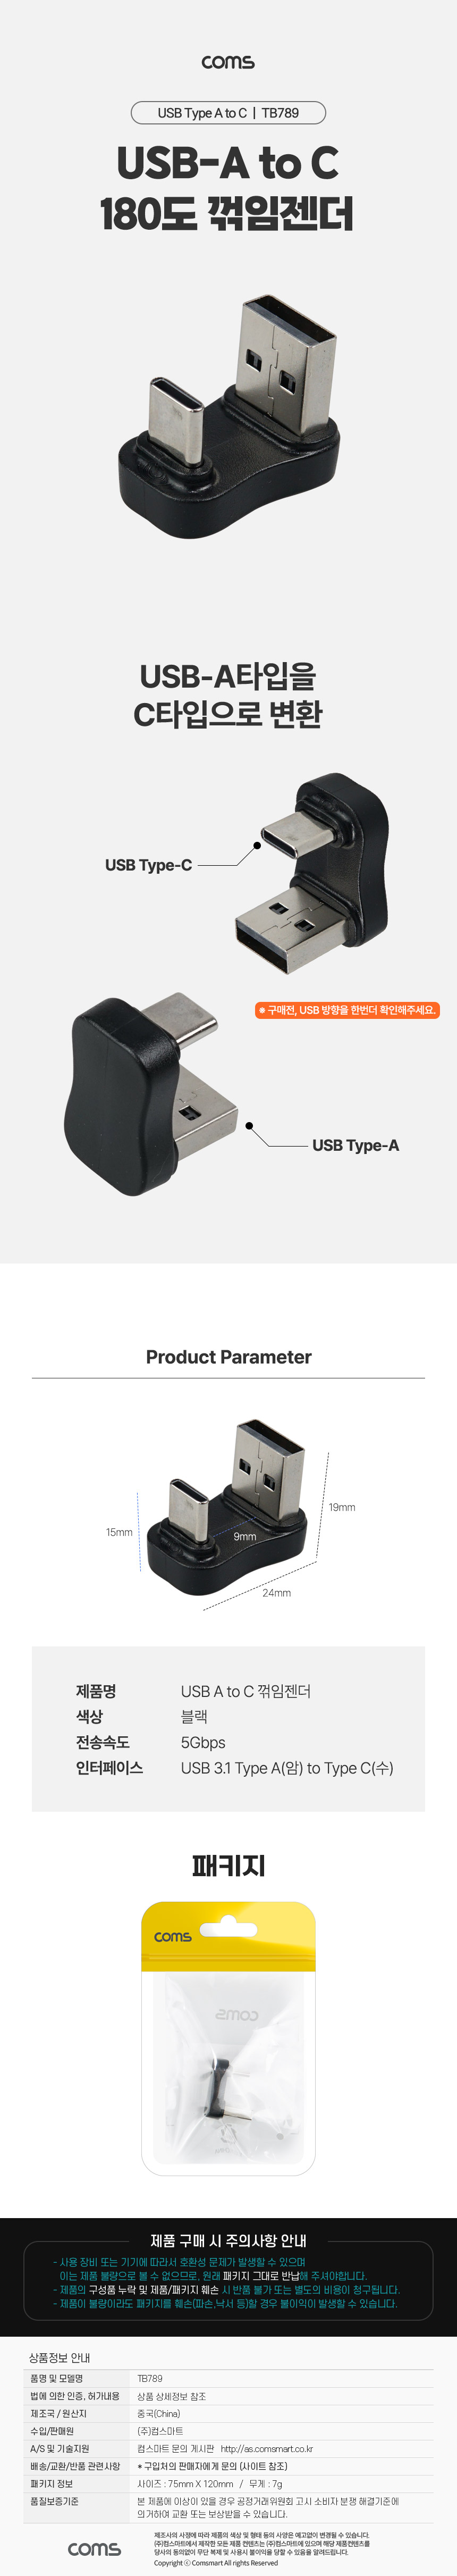 USB 3.1 Type C 변환젠더 C타입 to USB3.0 5Gbps고속전송 180도 꺾임